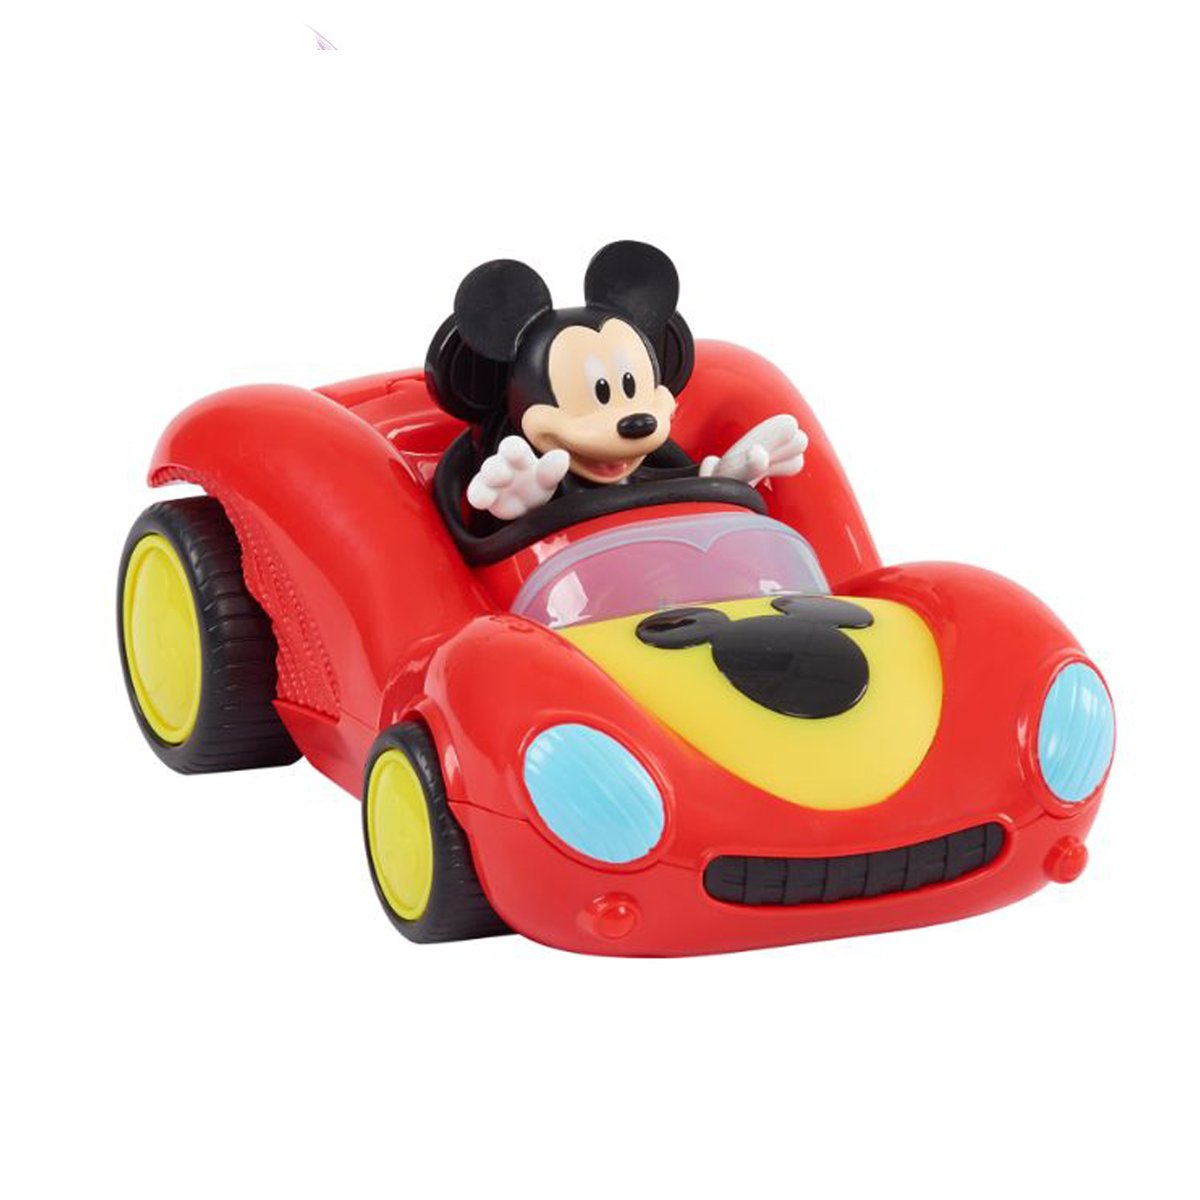 Figurina Mickey Mouse cu masina de curse, 38757 Disney Mickey Mouse